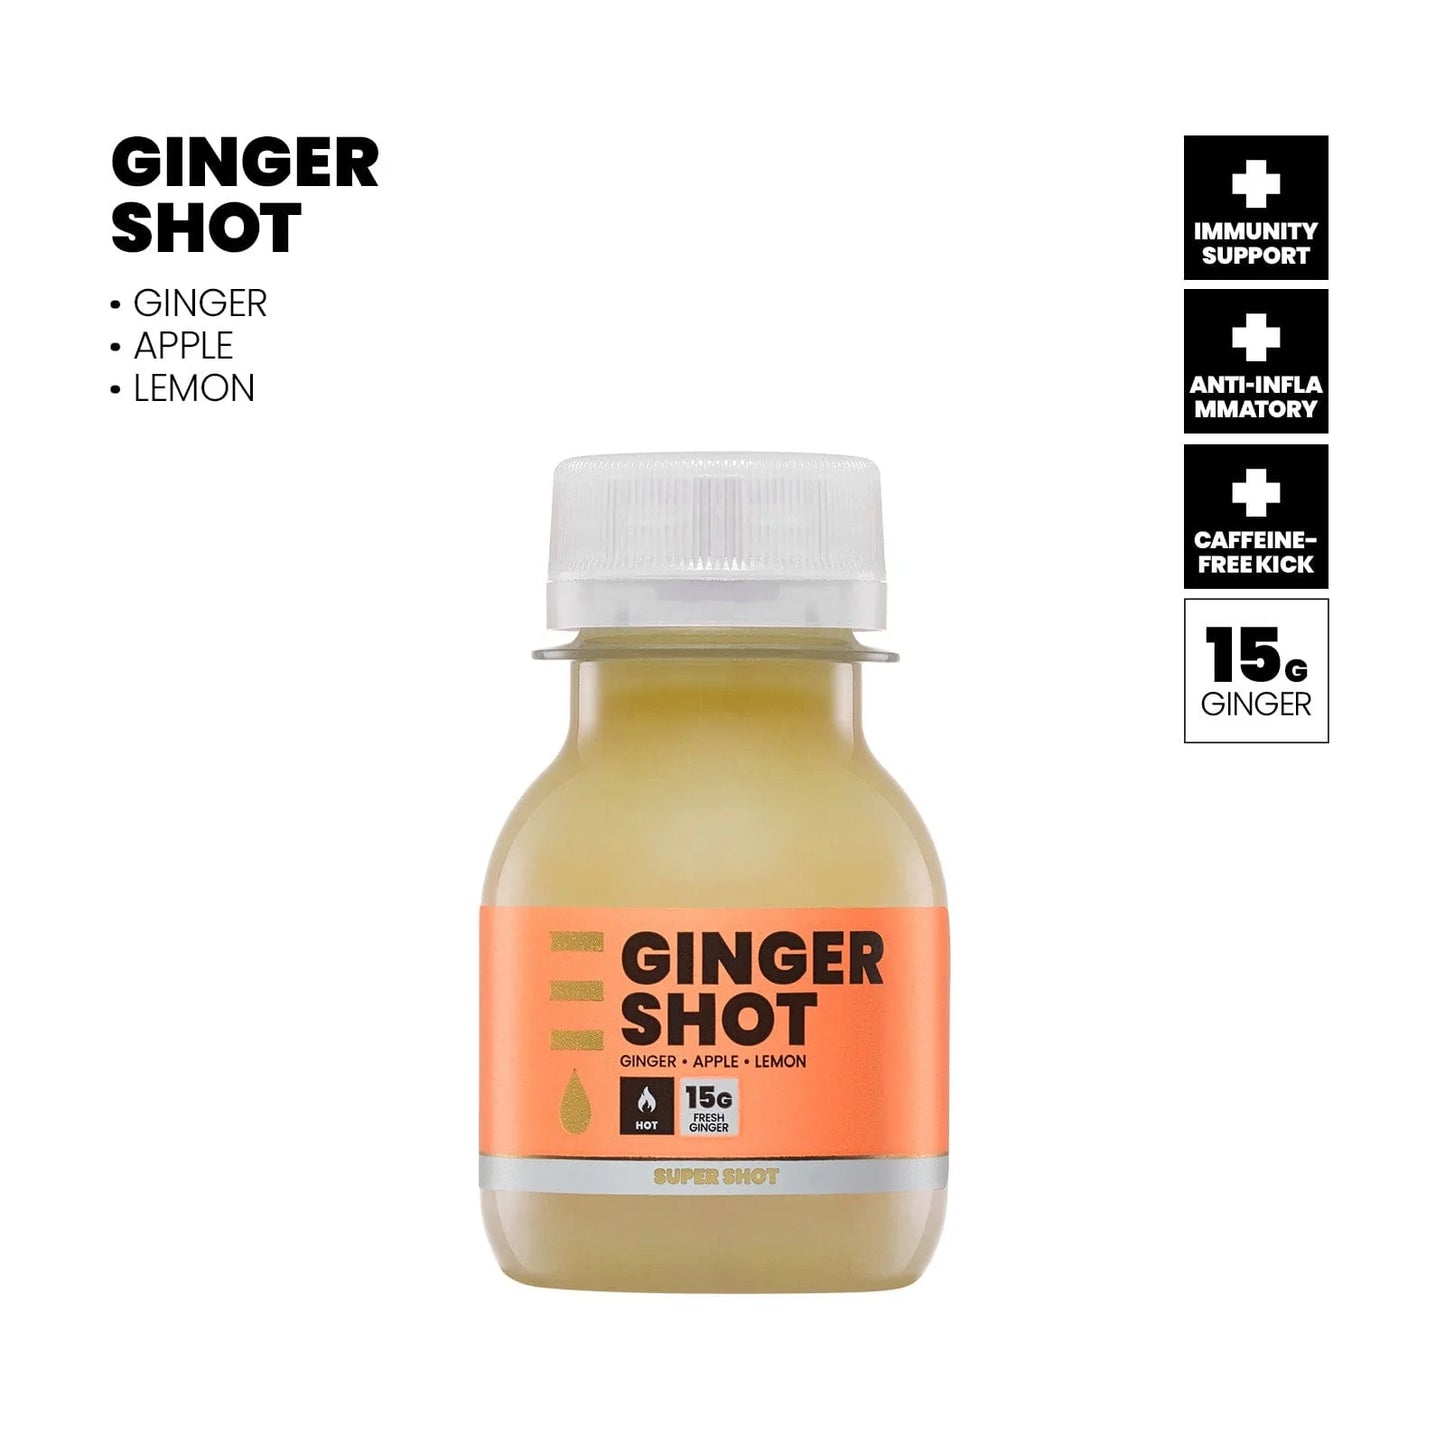 Ginger Shot Packs